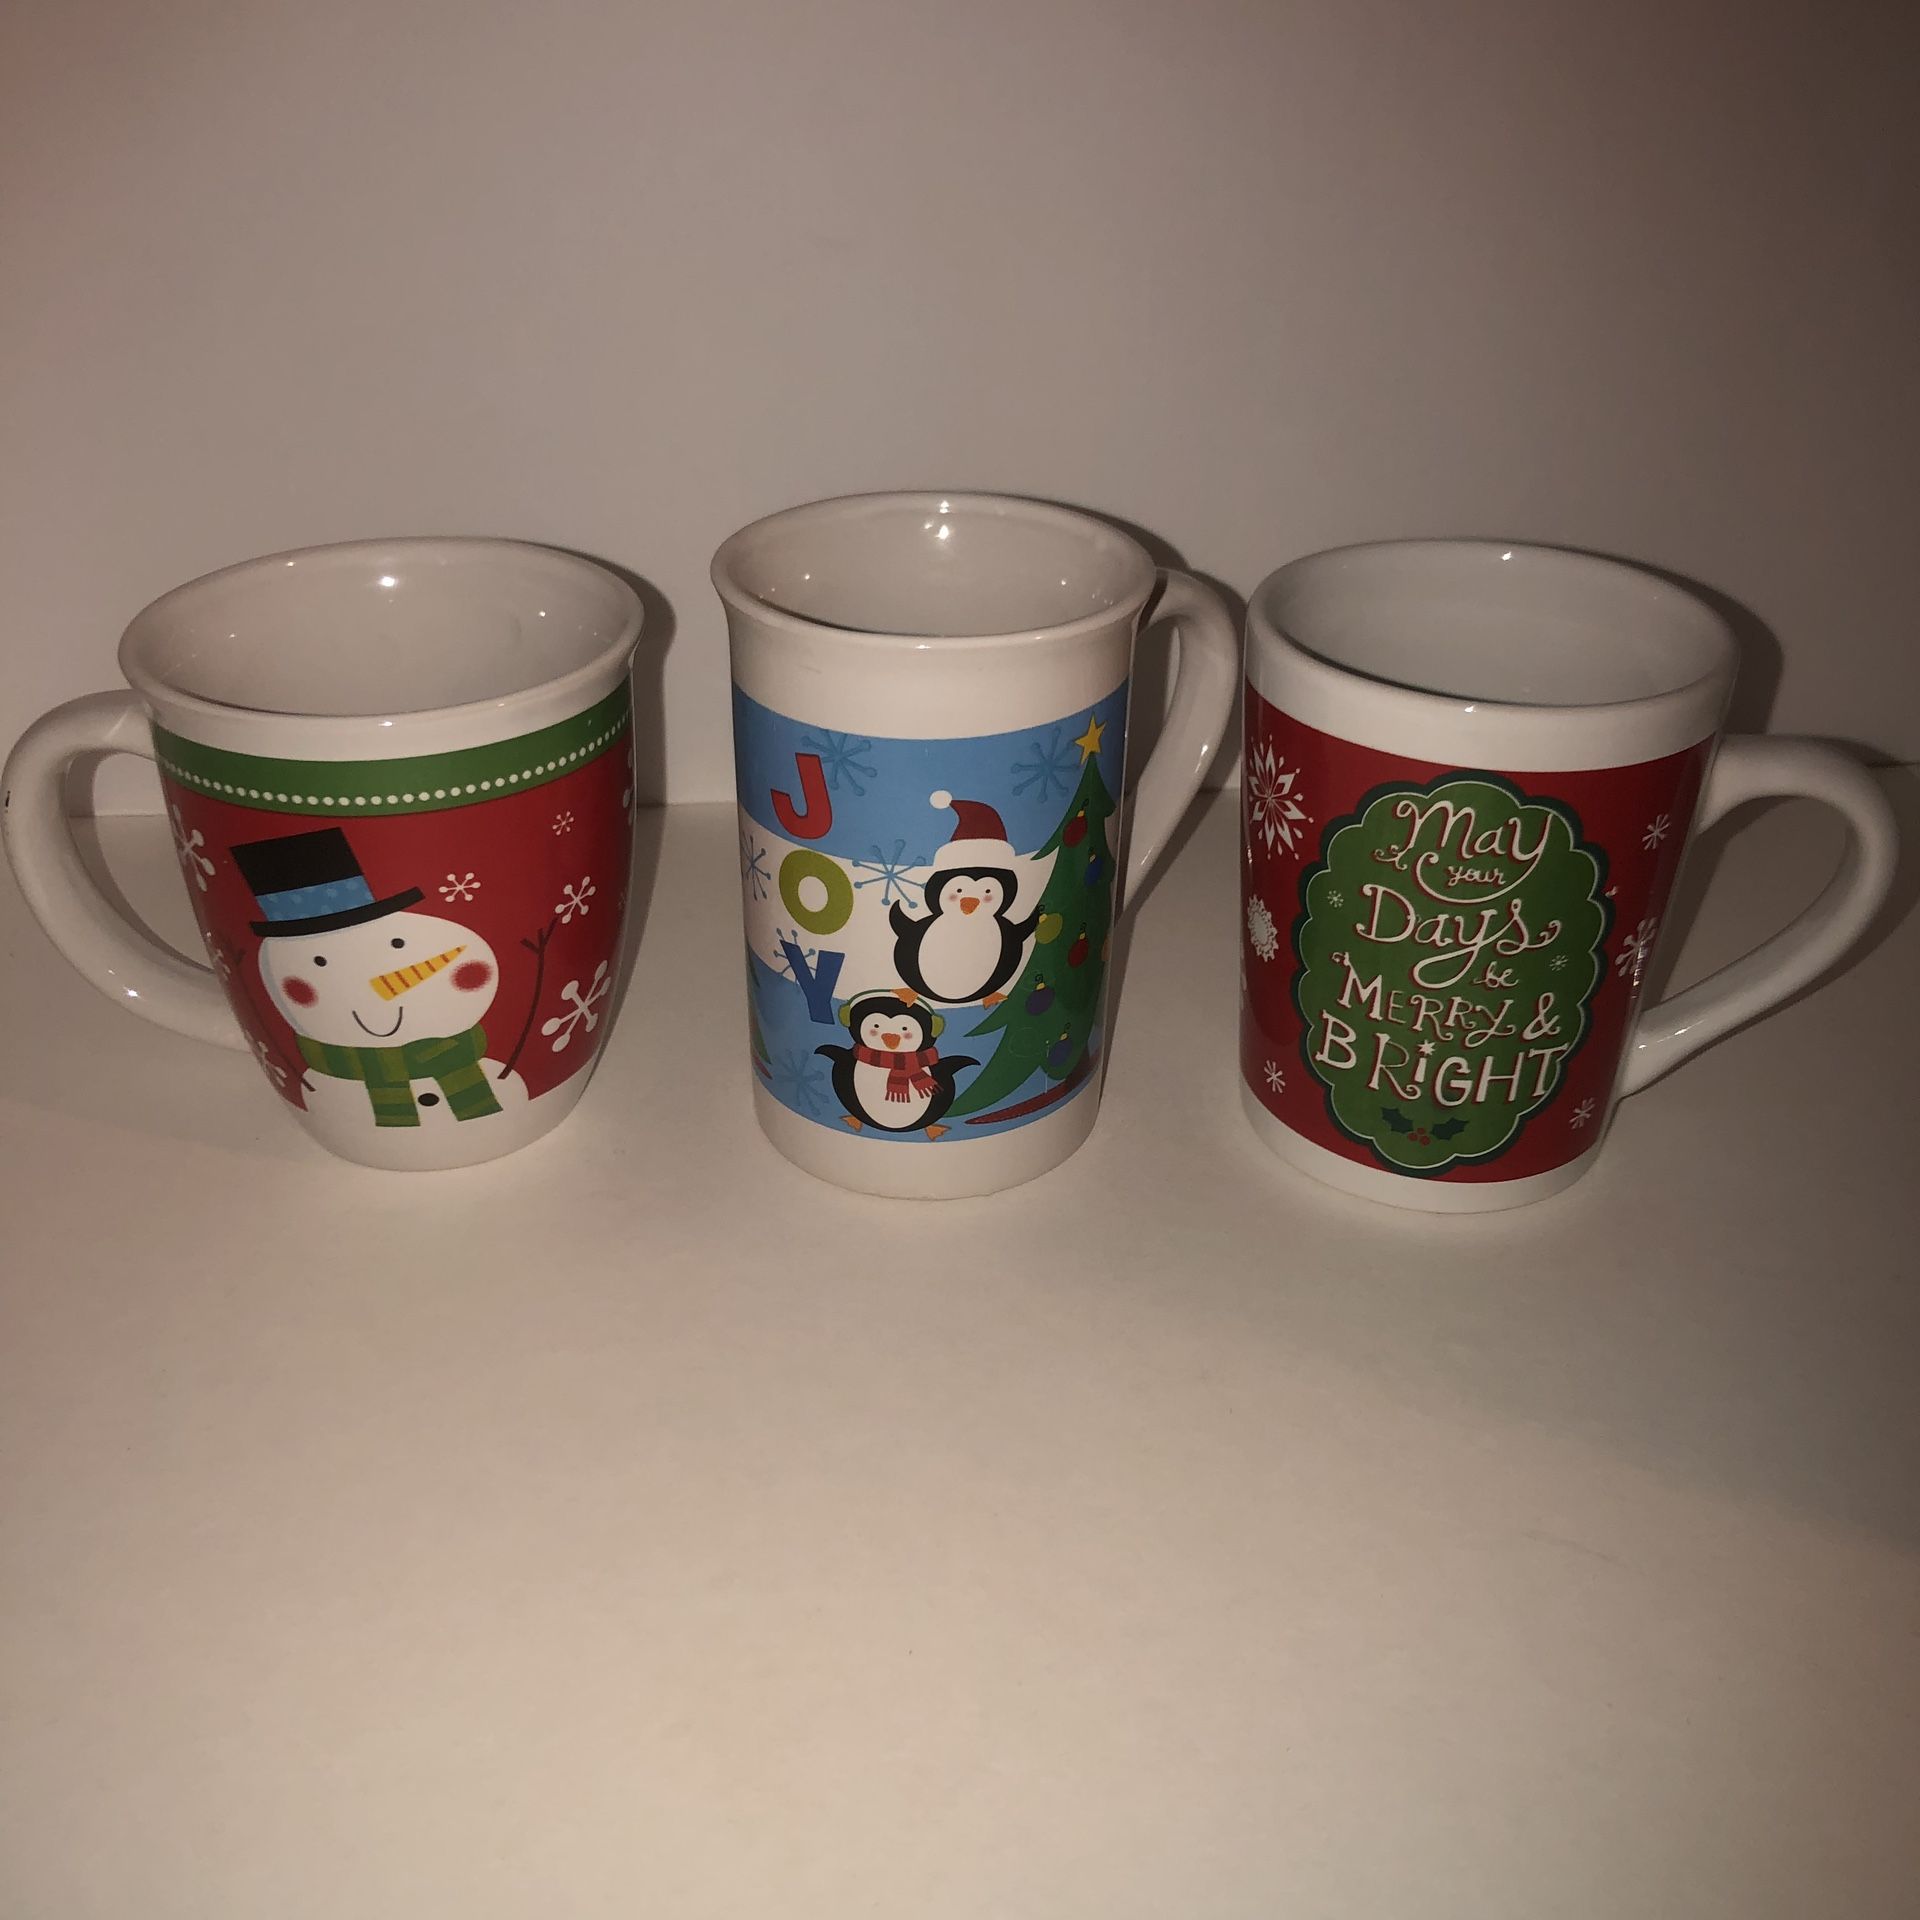 3 14oz Christmas Royal Norfolk mugs. Gently used